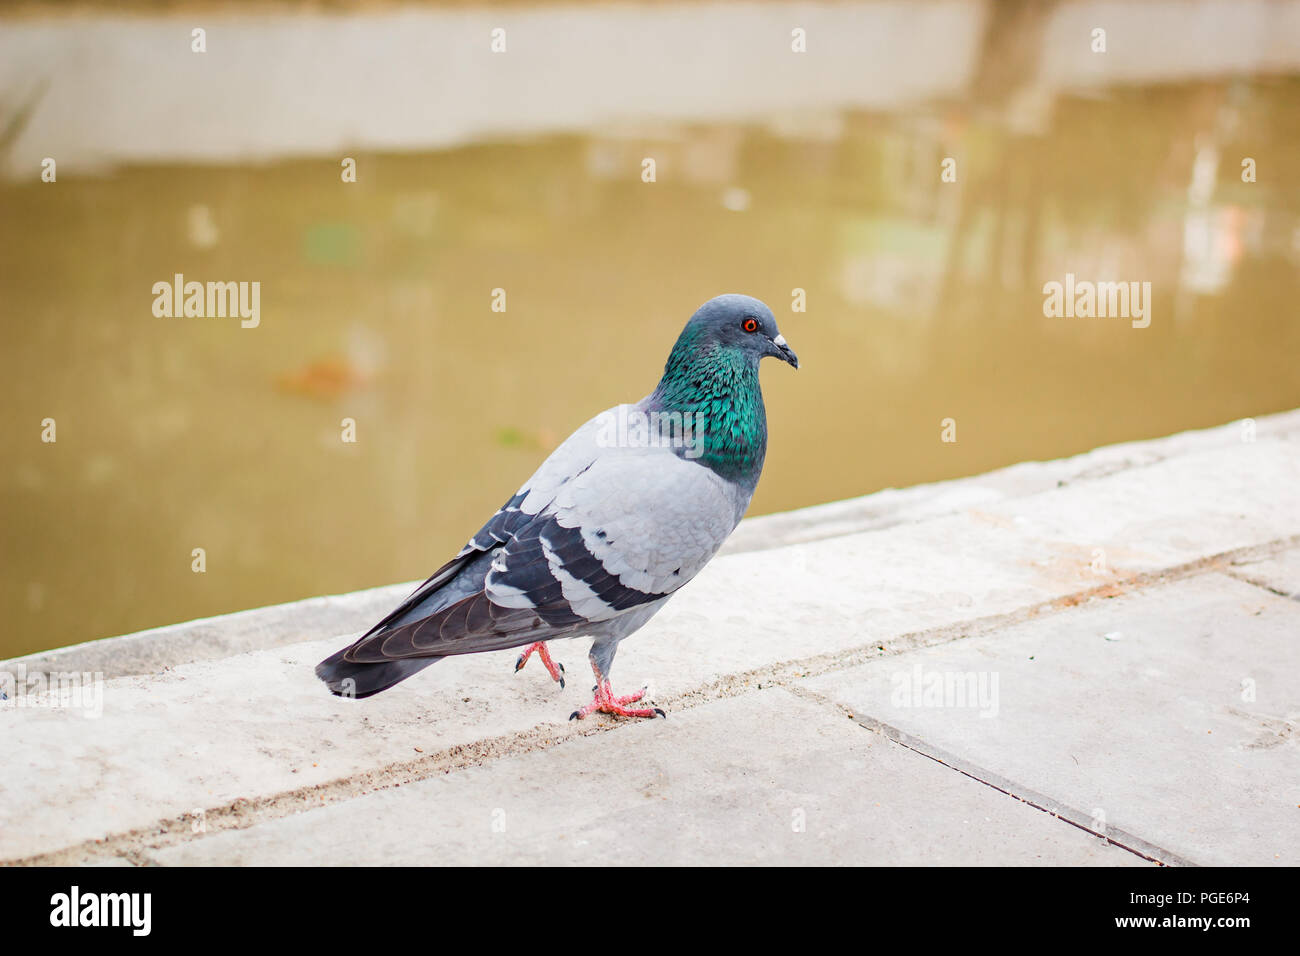 Pegions oder Tauben der Stadt bewohnt, pegions ist das Symbol des Friedens, Thailand. Stockfoto